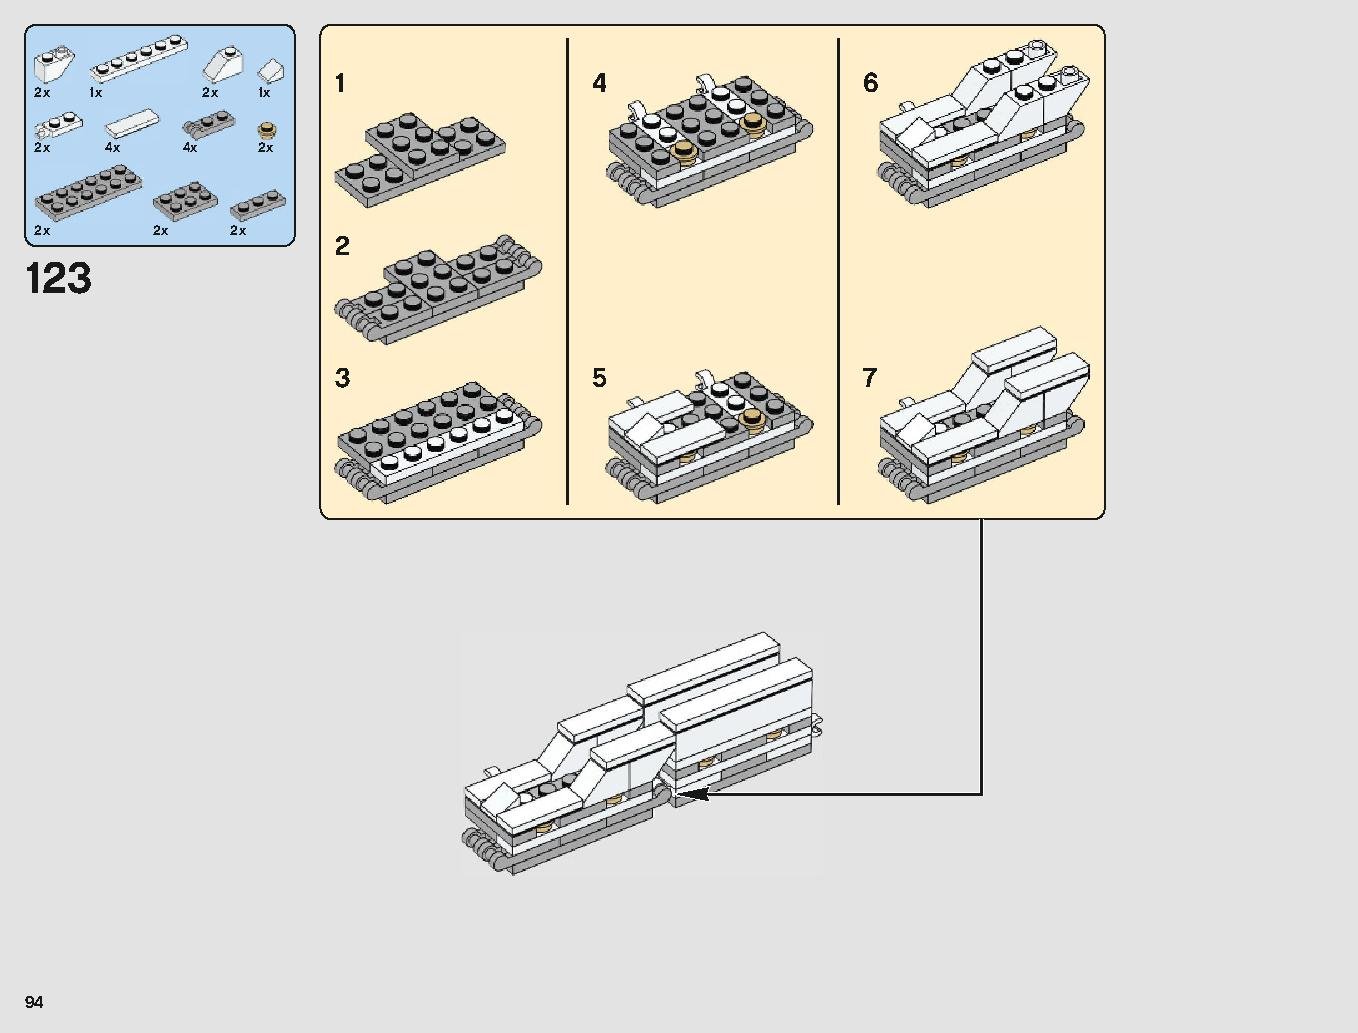 ミレニアム・ファルコン 75212 レゴの商品情報 レゴの説明書・組立方法 94 page